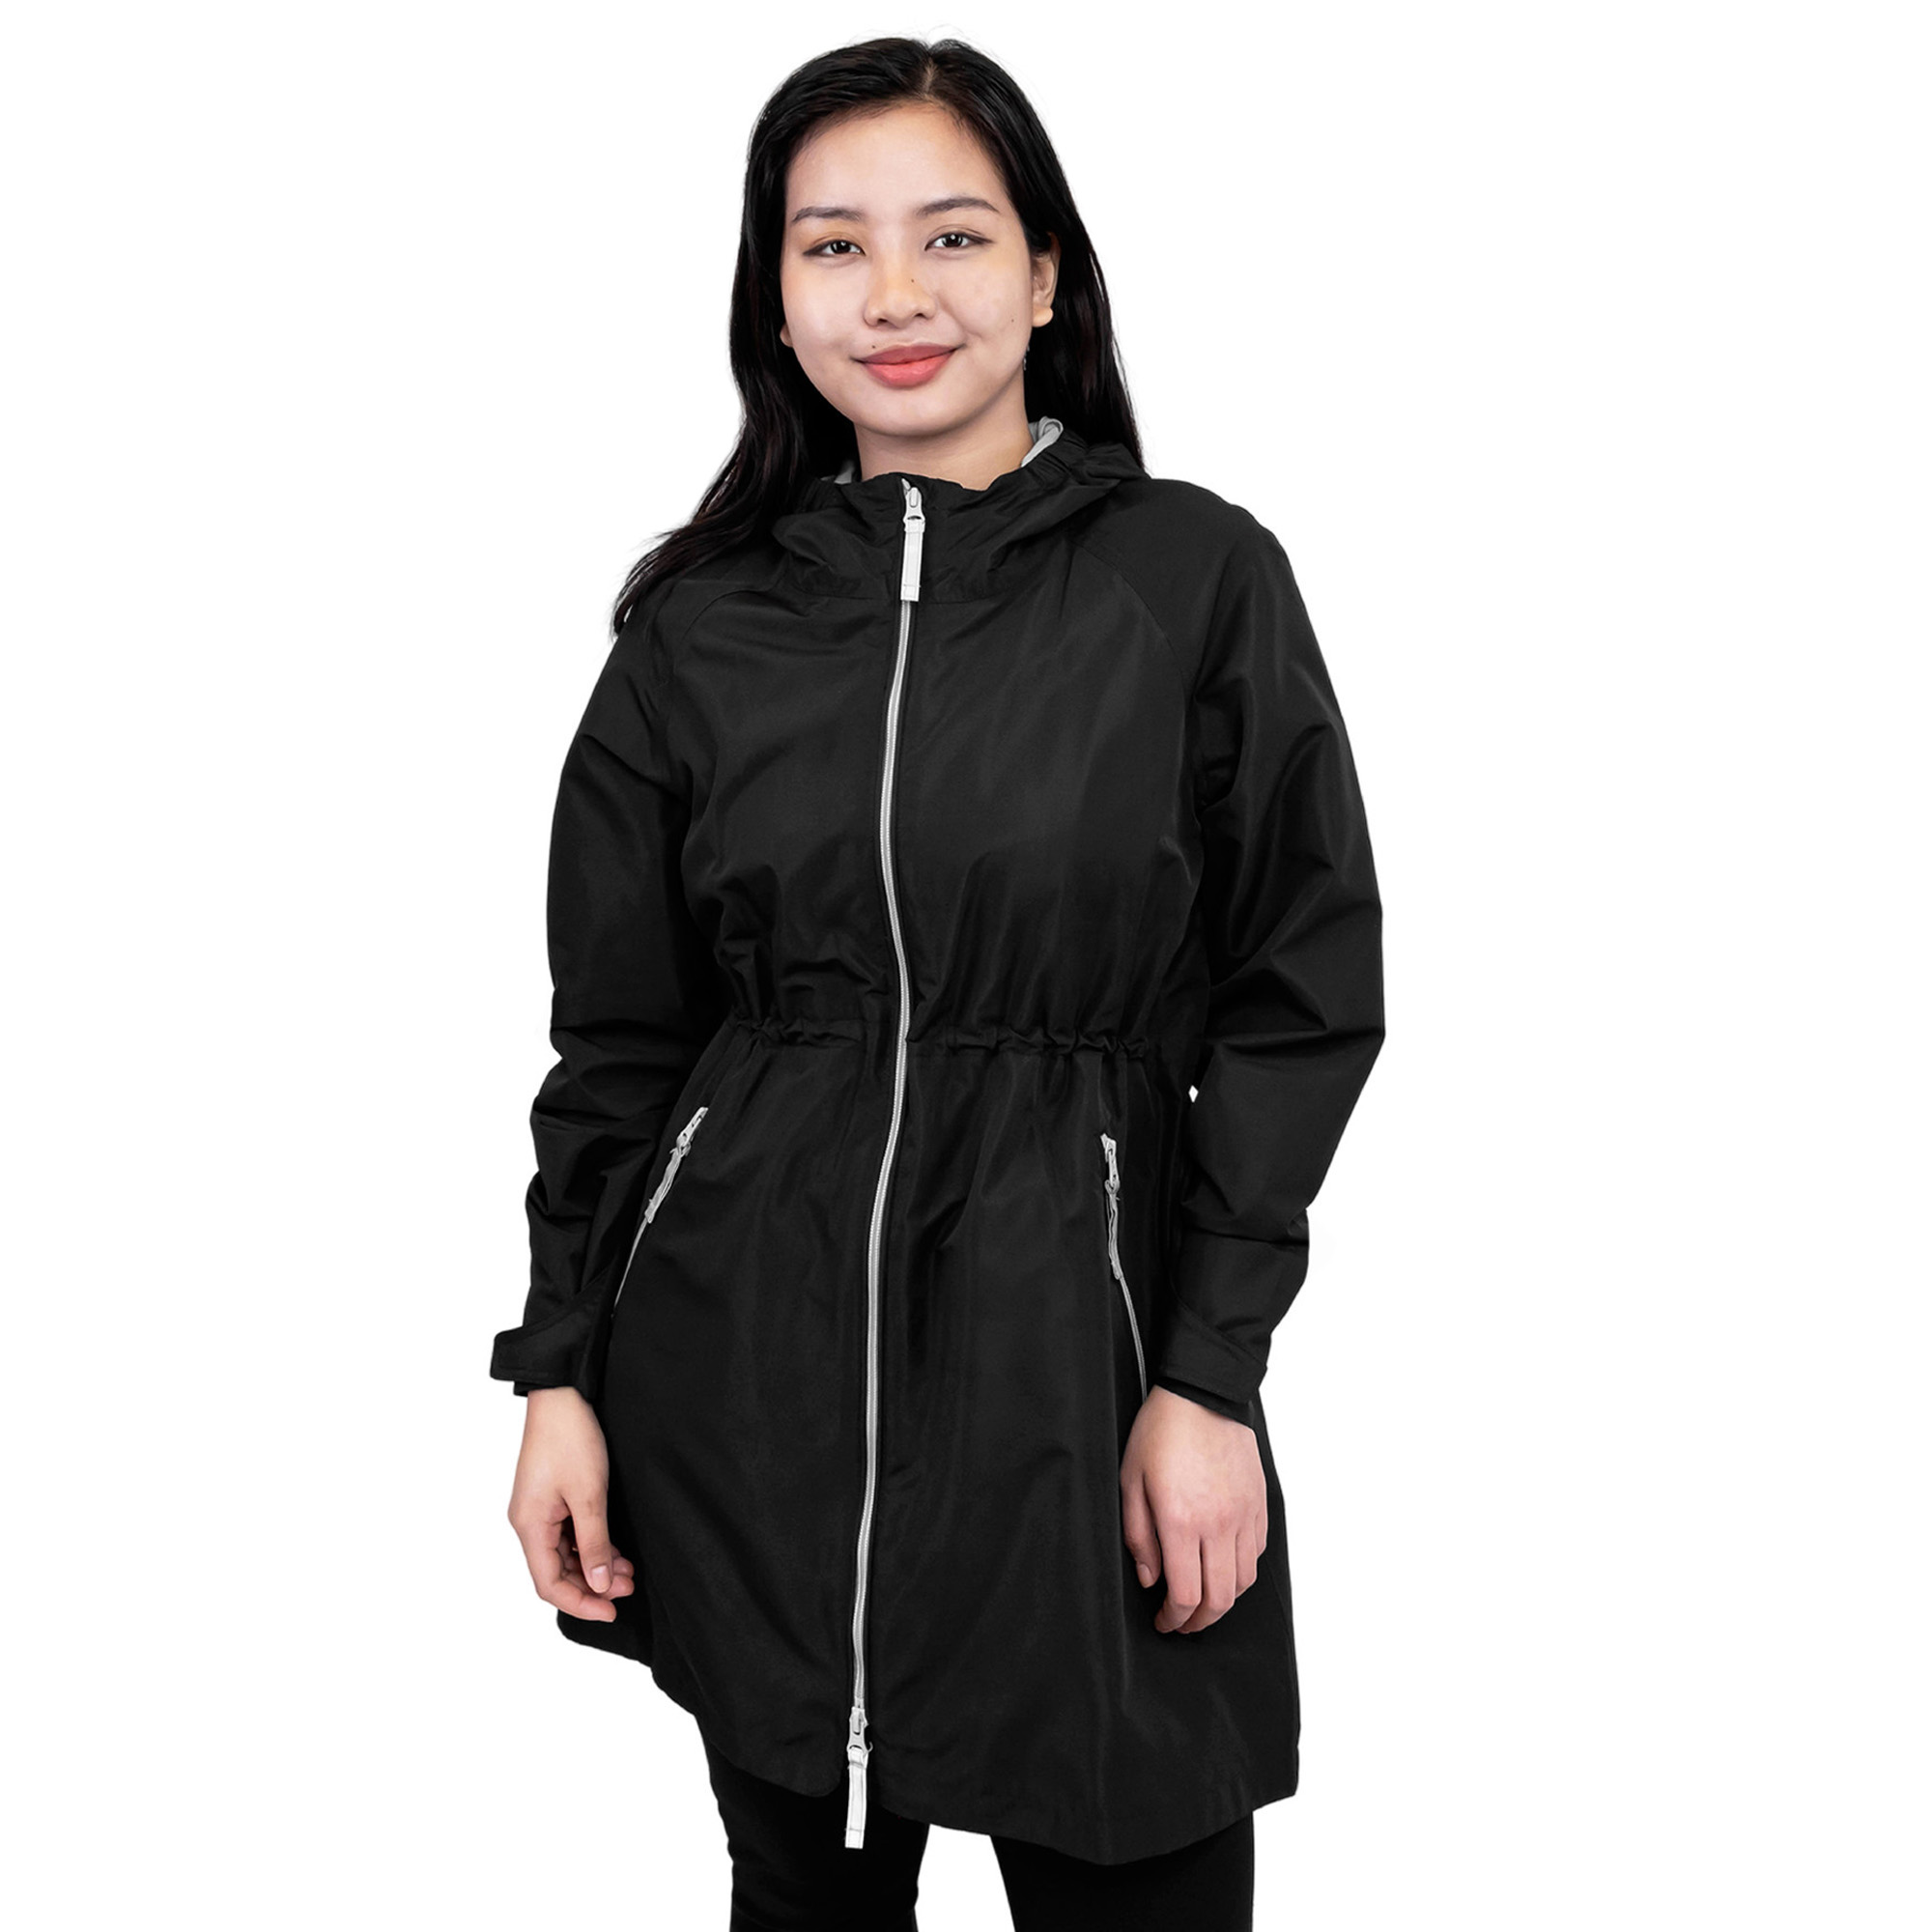 Womens Adjustable Rain Jackets | Black